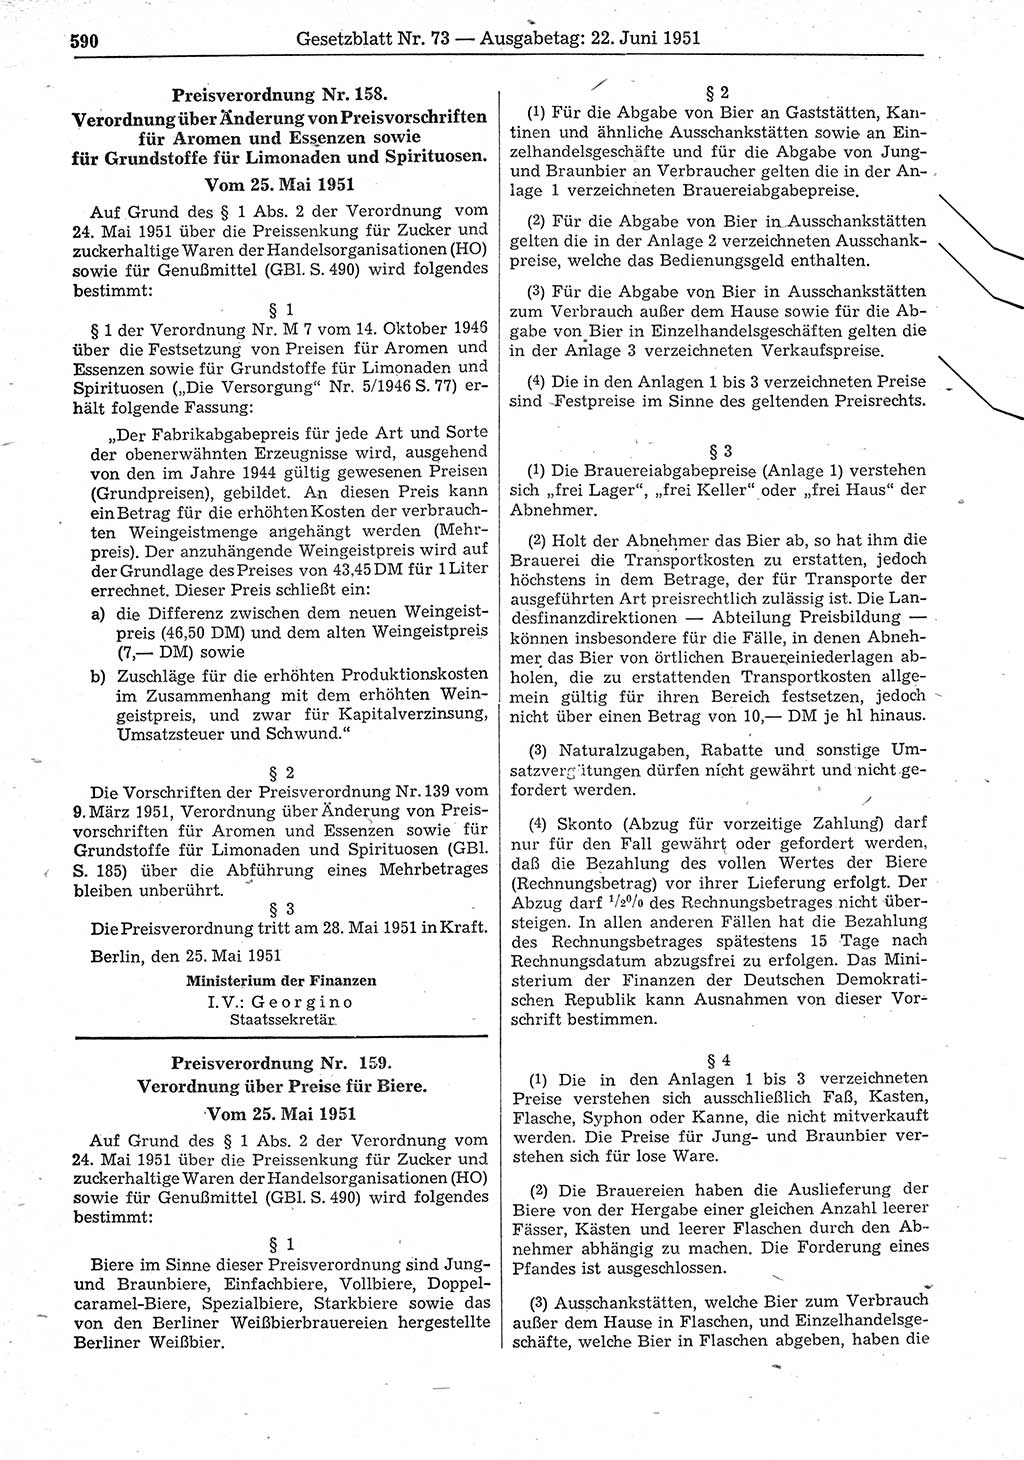 Gesetzblatt (GBl.) der Deutschen Demokratischen Republik (DDR) 1951, Seite 590 (GBl. DDR 1951, S. 590)